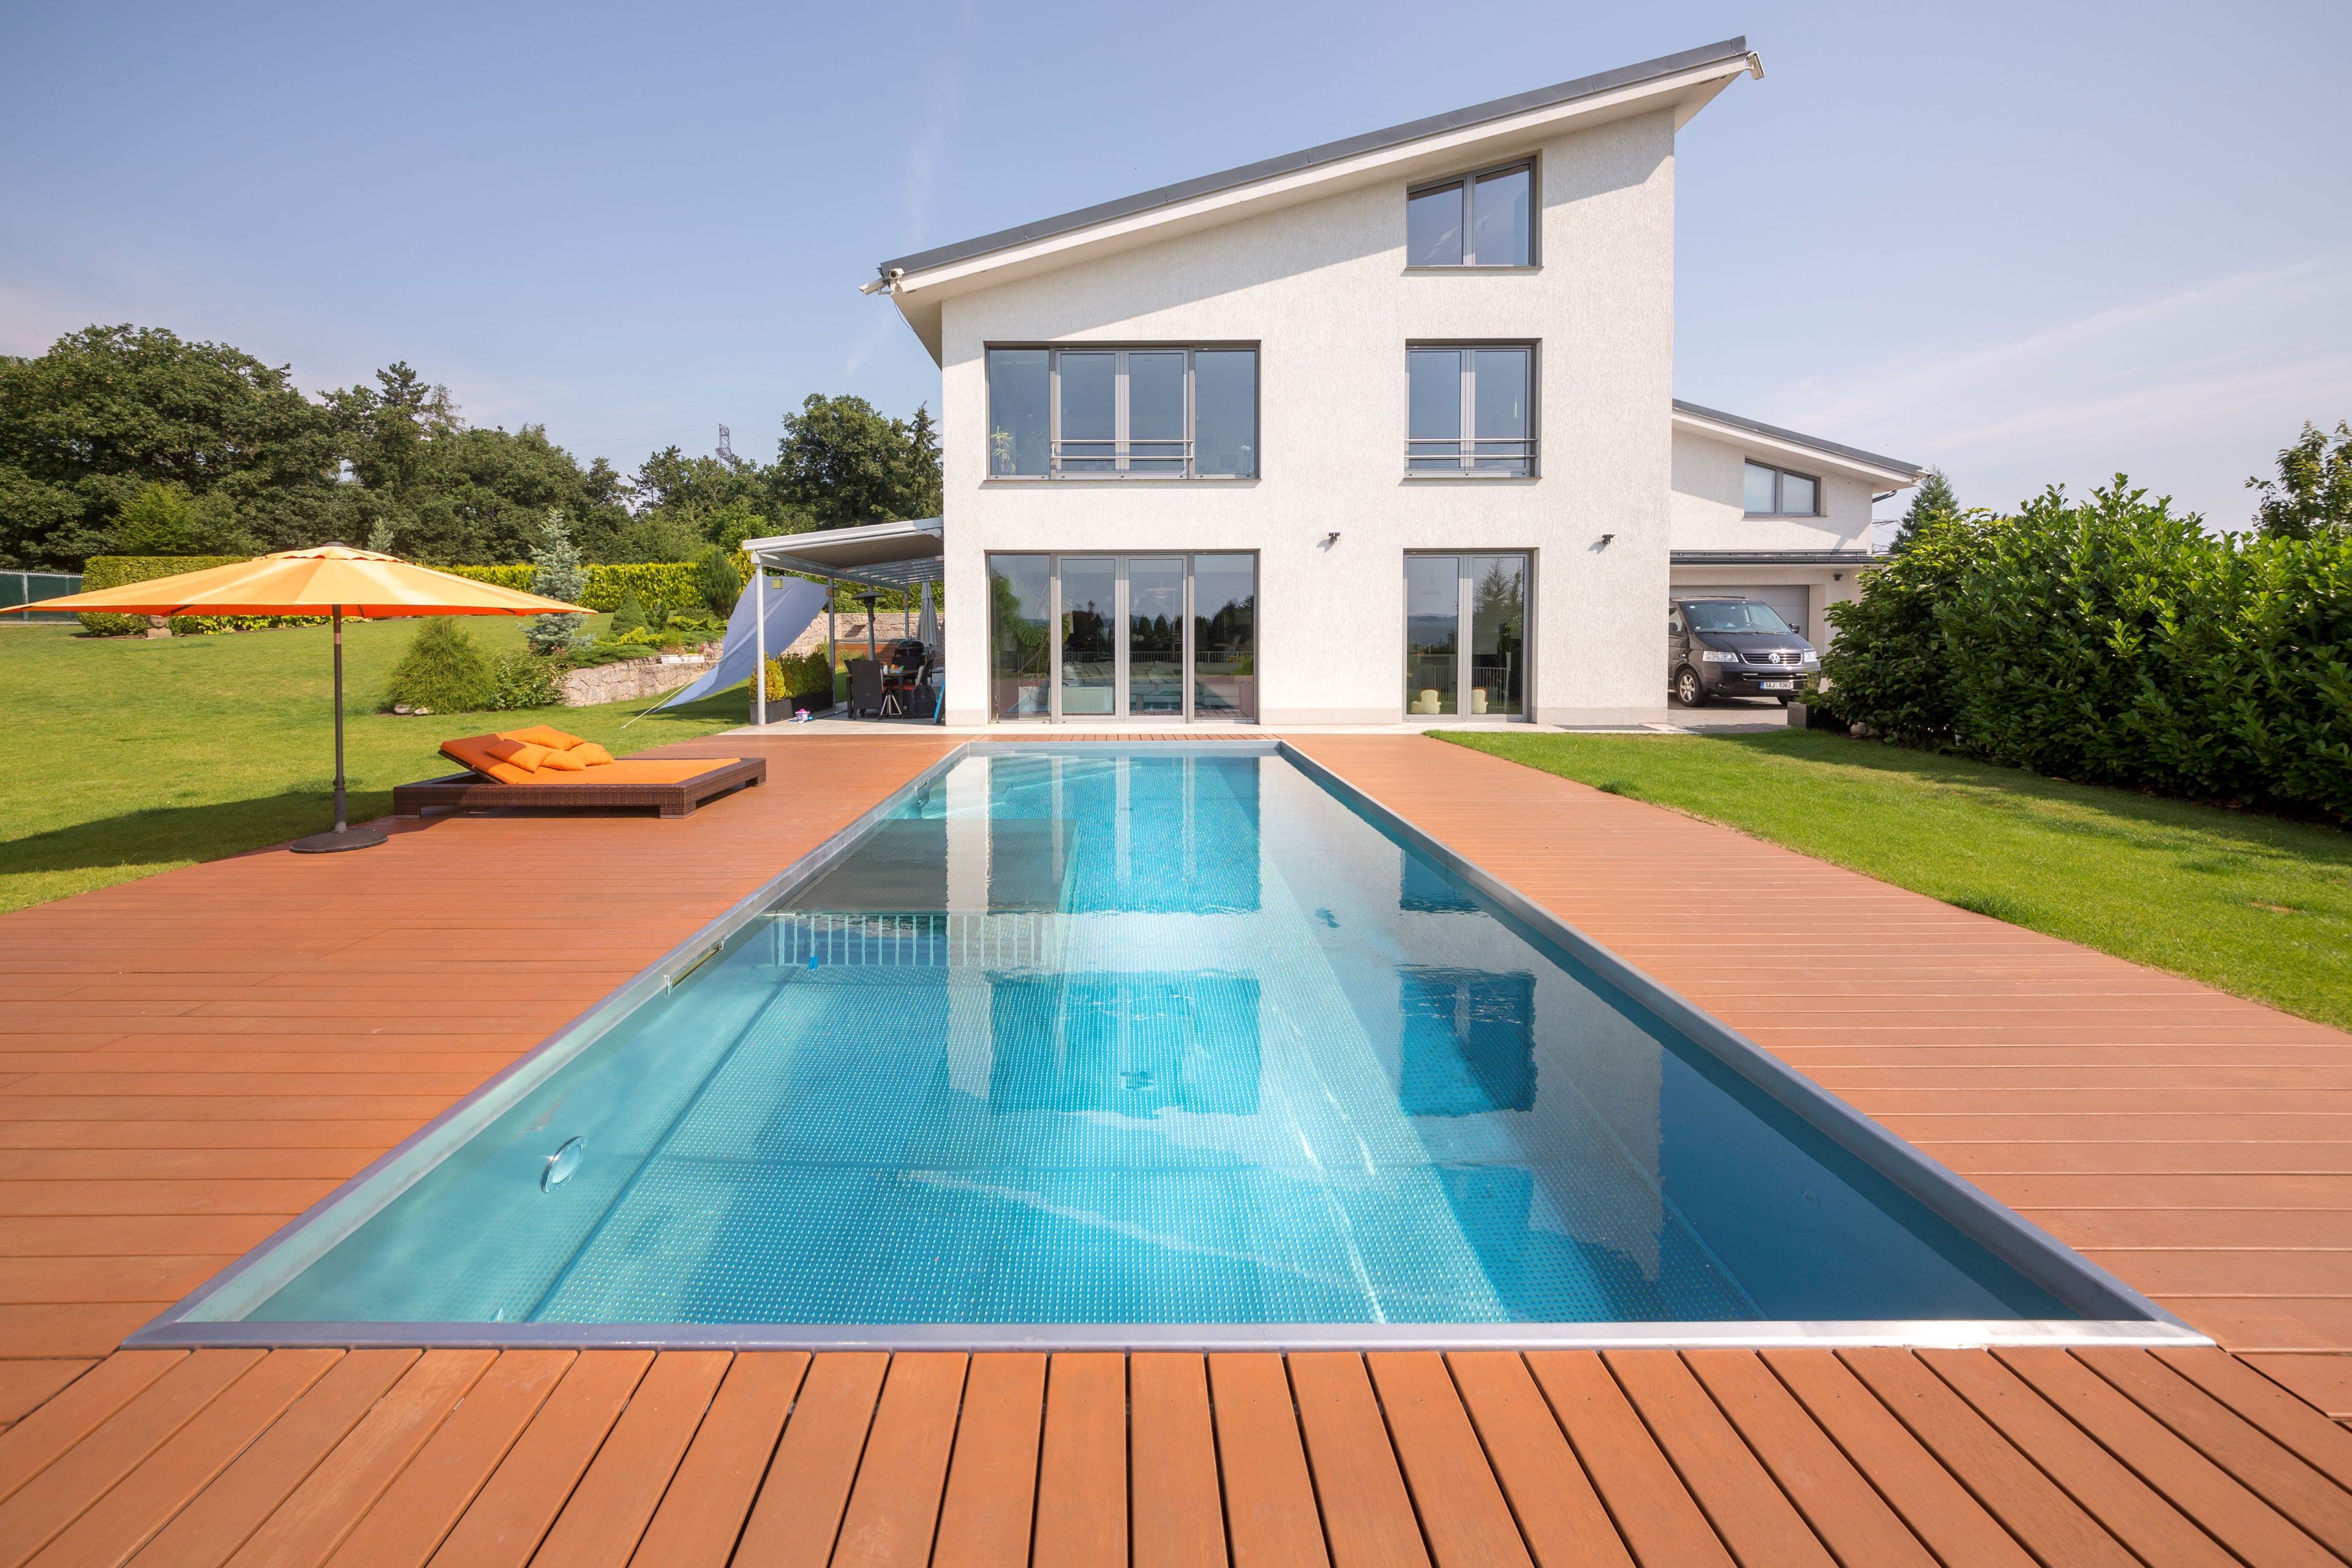 Rodinný nerezový bazén s brouzdalištěm | IMAGINOX